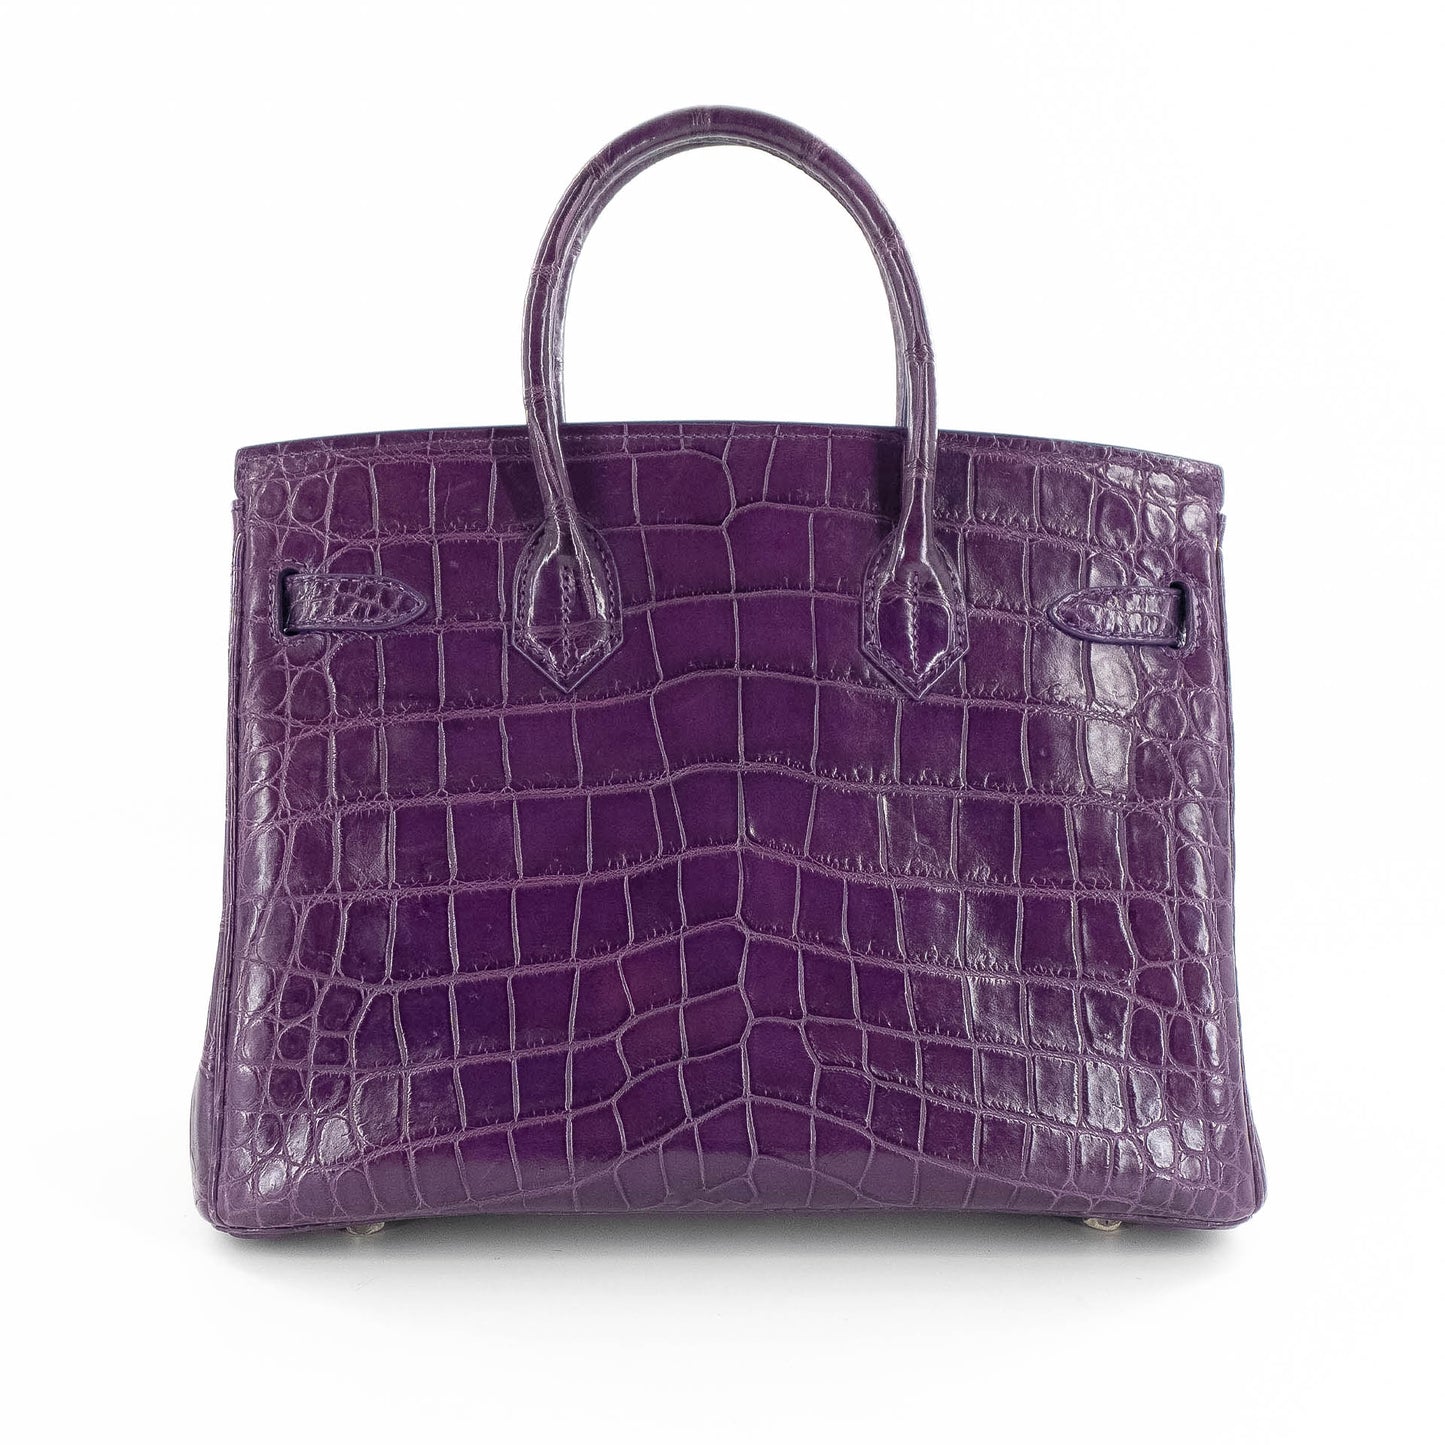 Duchess Handbag in Matte Purple Crocodile Belly Skin